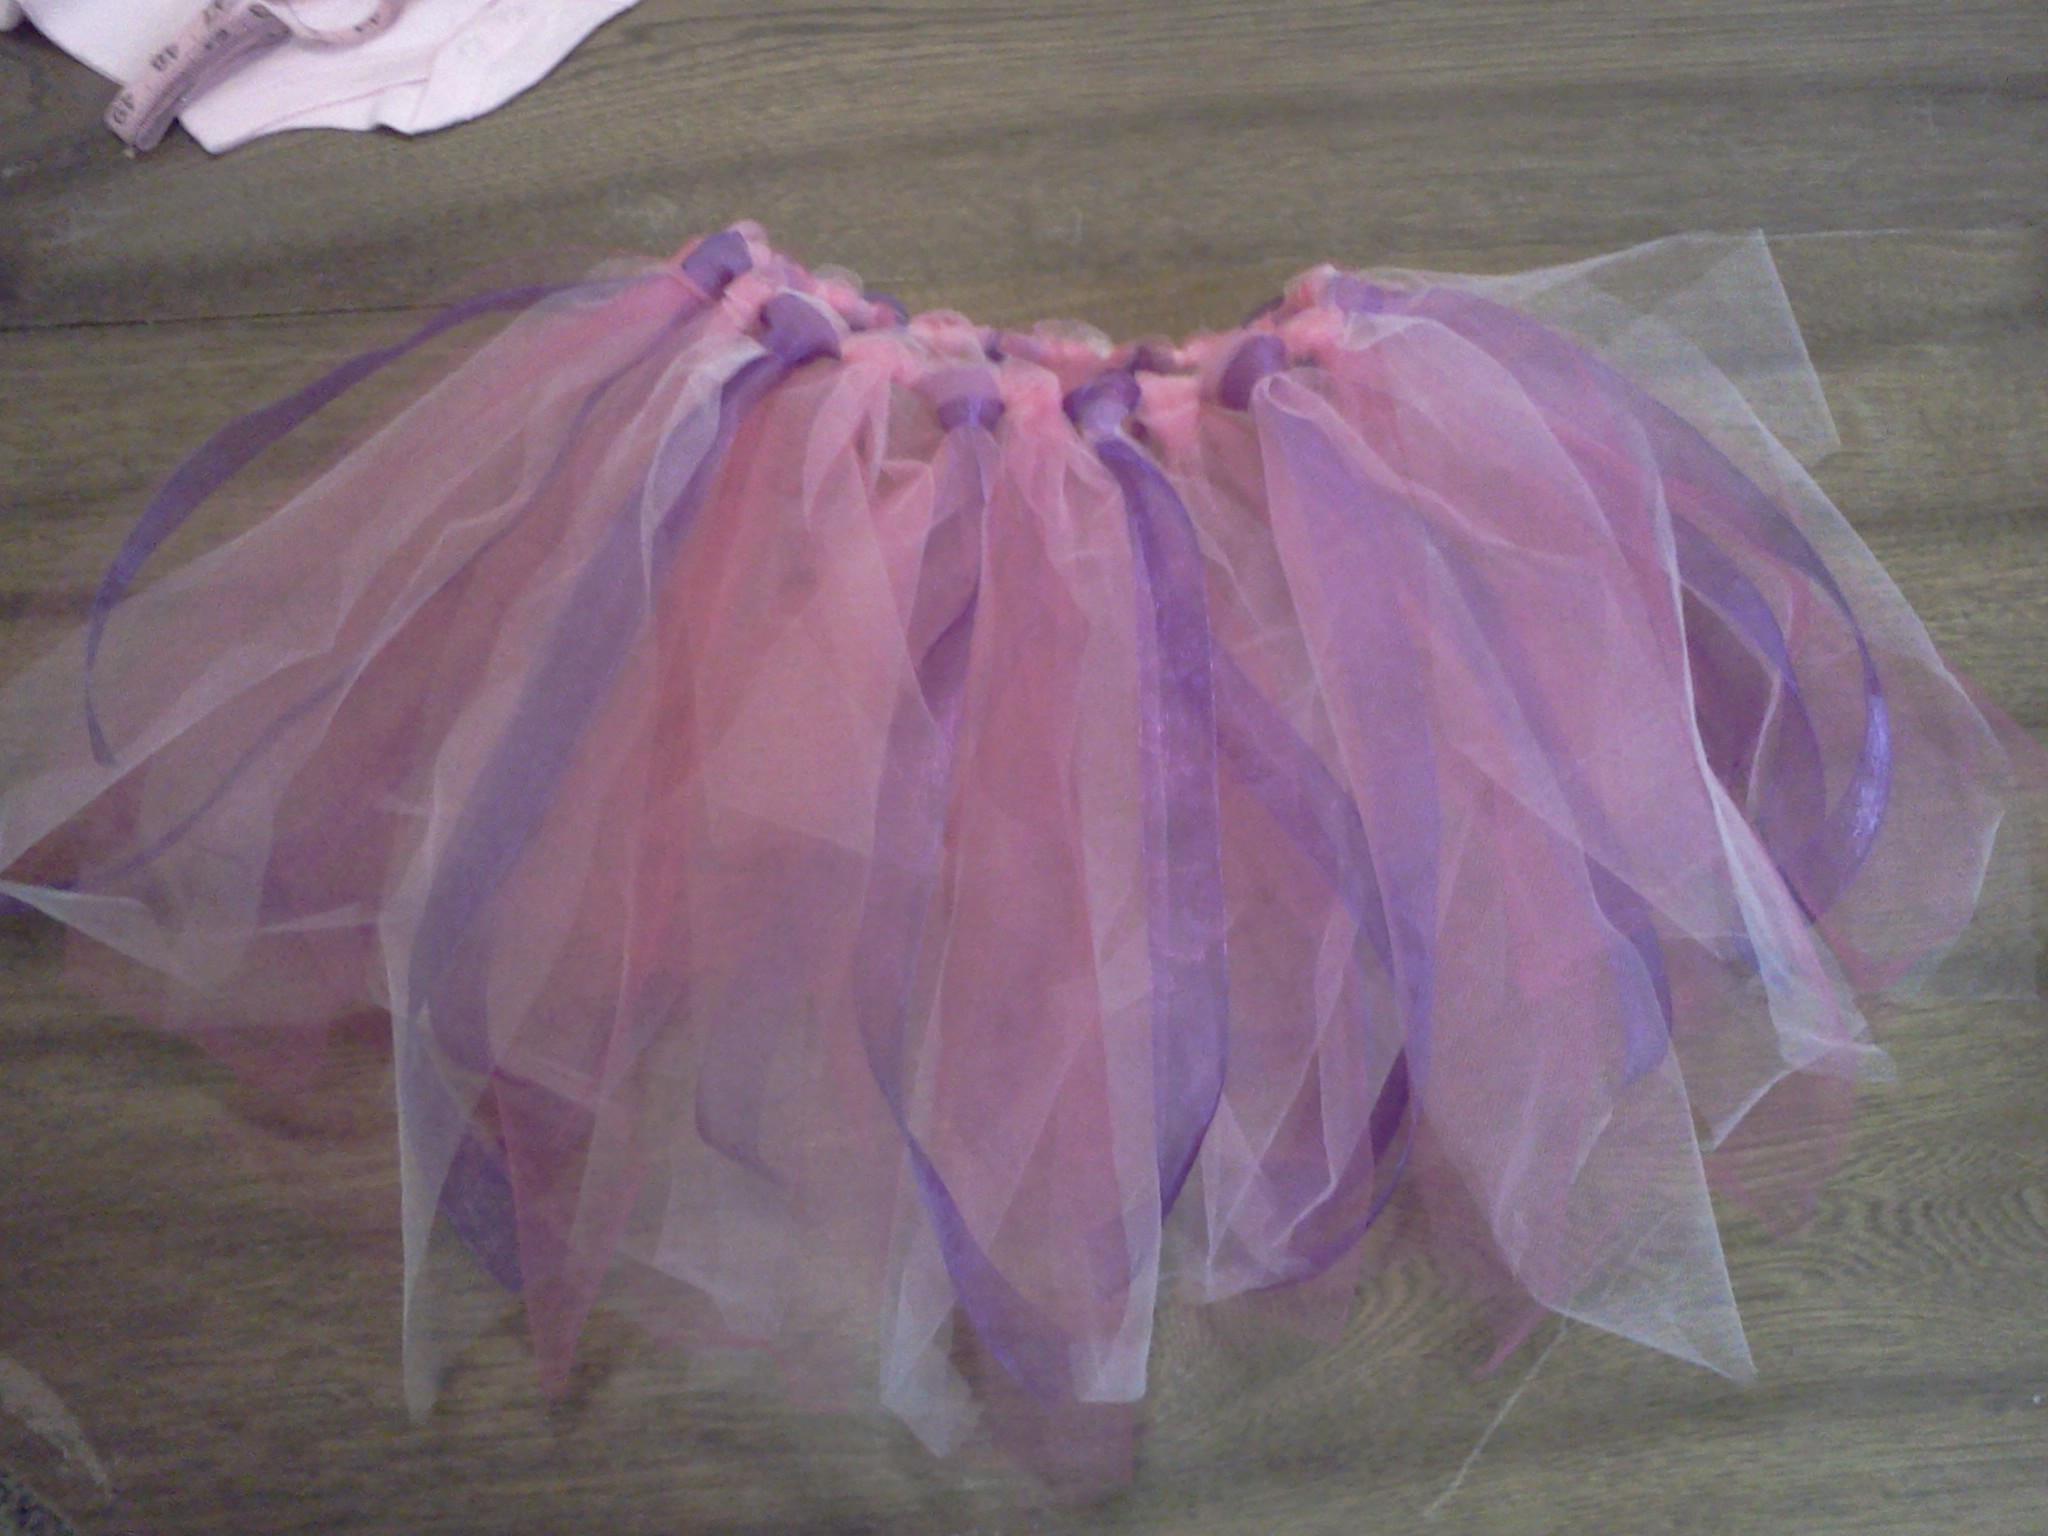 DIY Baby Tutu Skirt
 DIY baby fairy or ballerina